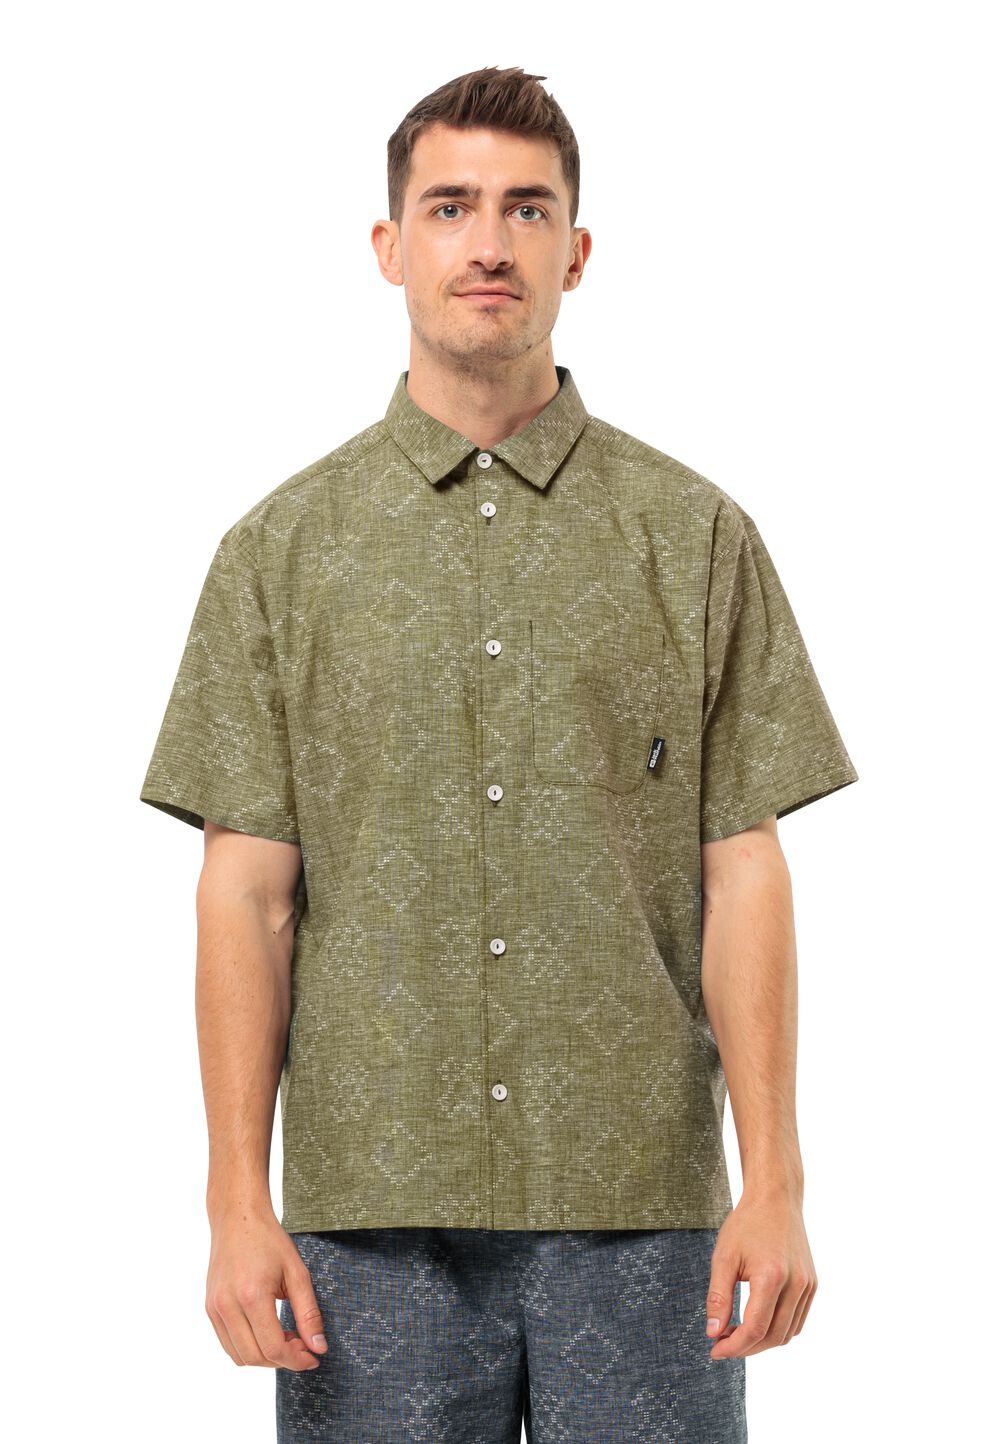 Jack Wolfskin Kurzarm Hemd Herren Karana Shirt Men XL braun bay leaf von Jack Wolfskin